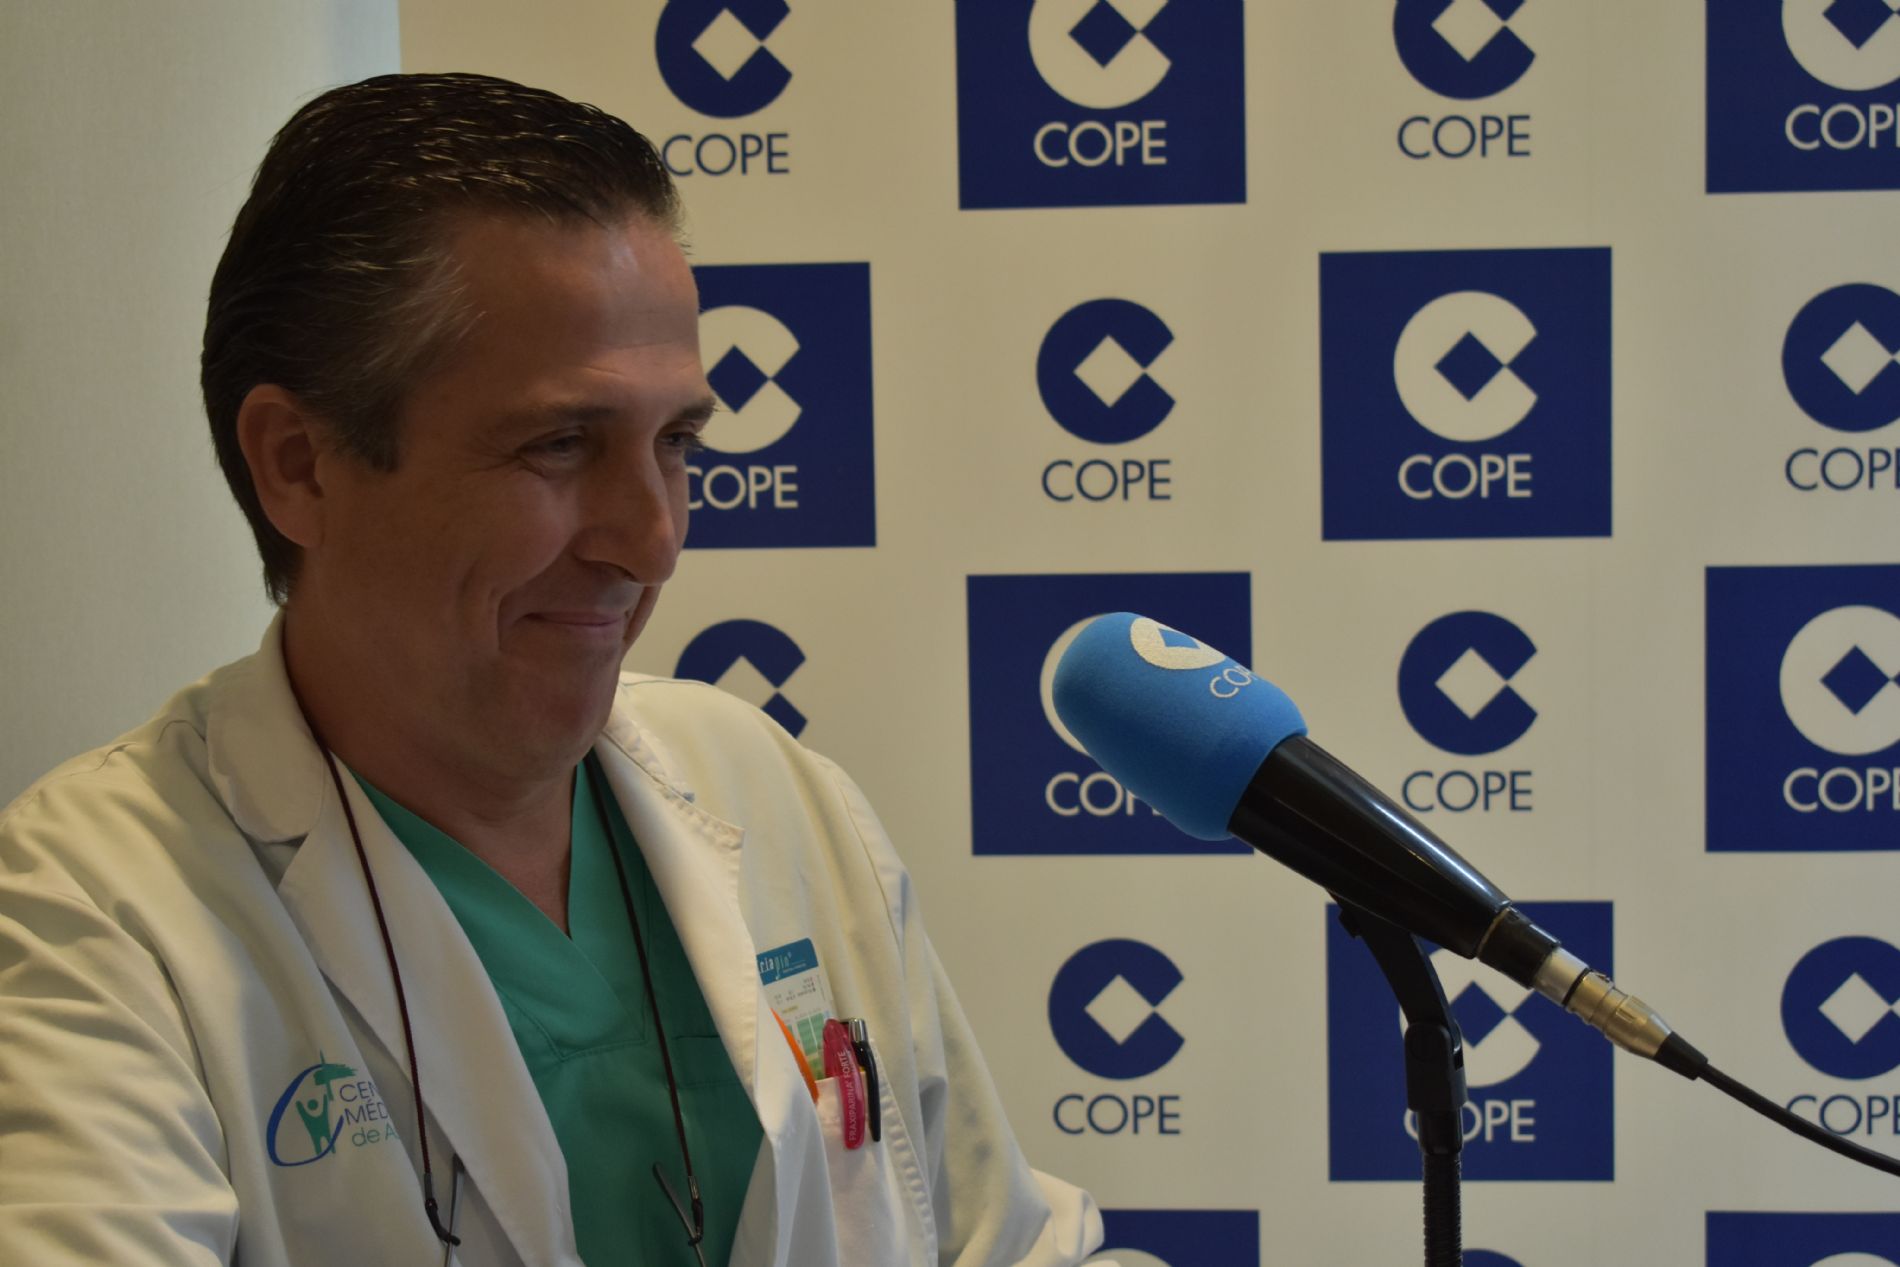 Programa en directo de COPE Asturias desde el Centro Médico de Asturias